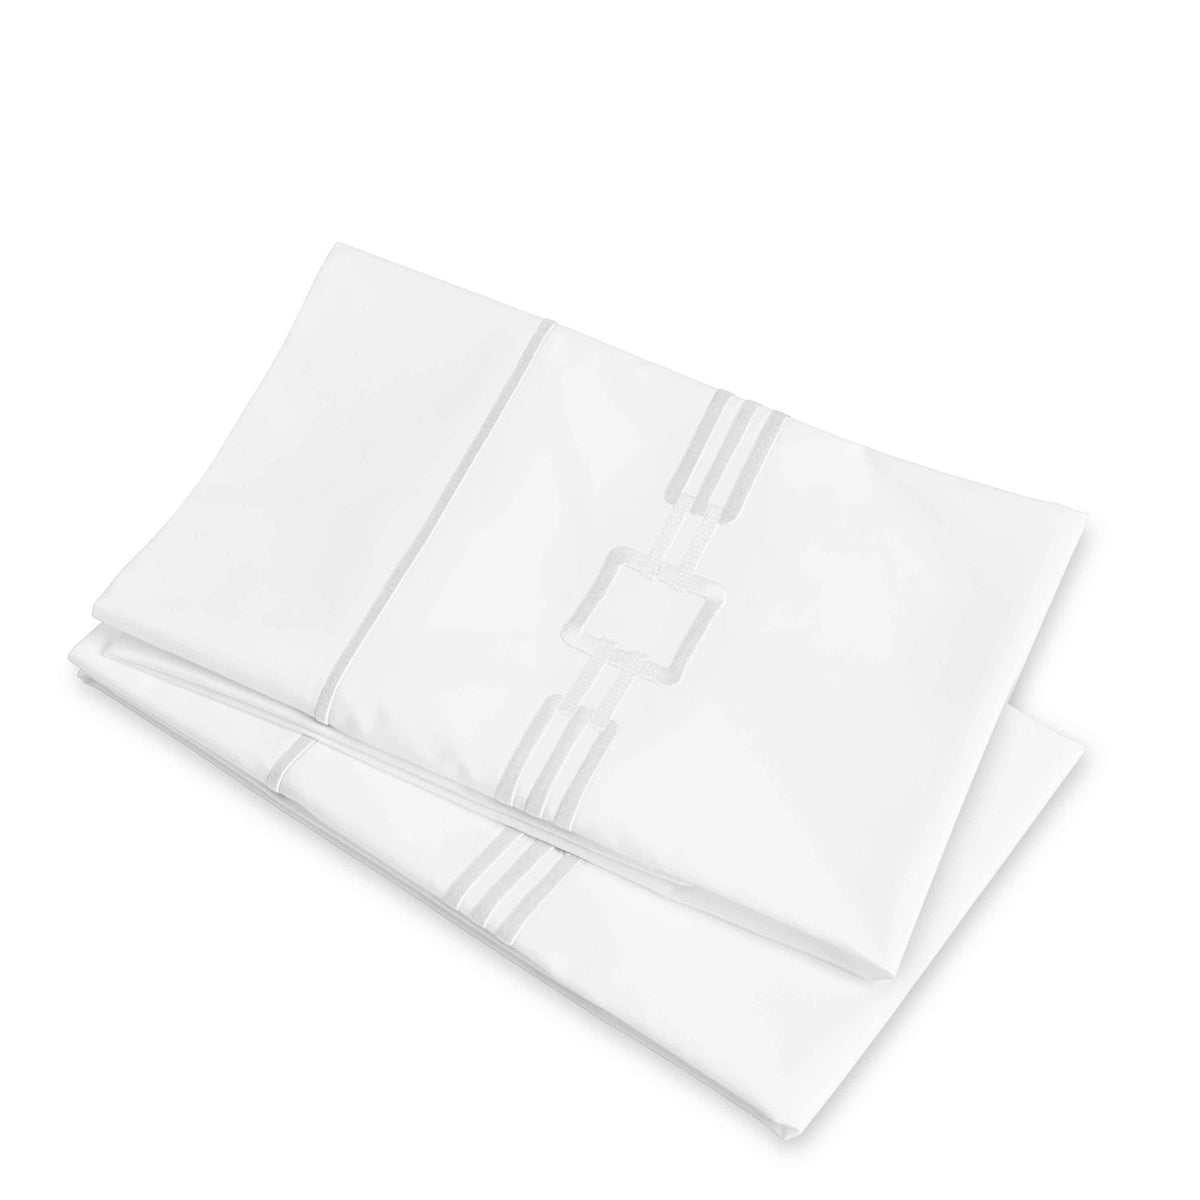 Clear Image of Signoria Retrò Pillowcases in White Color